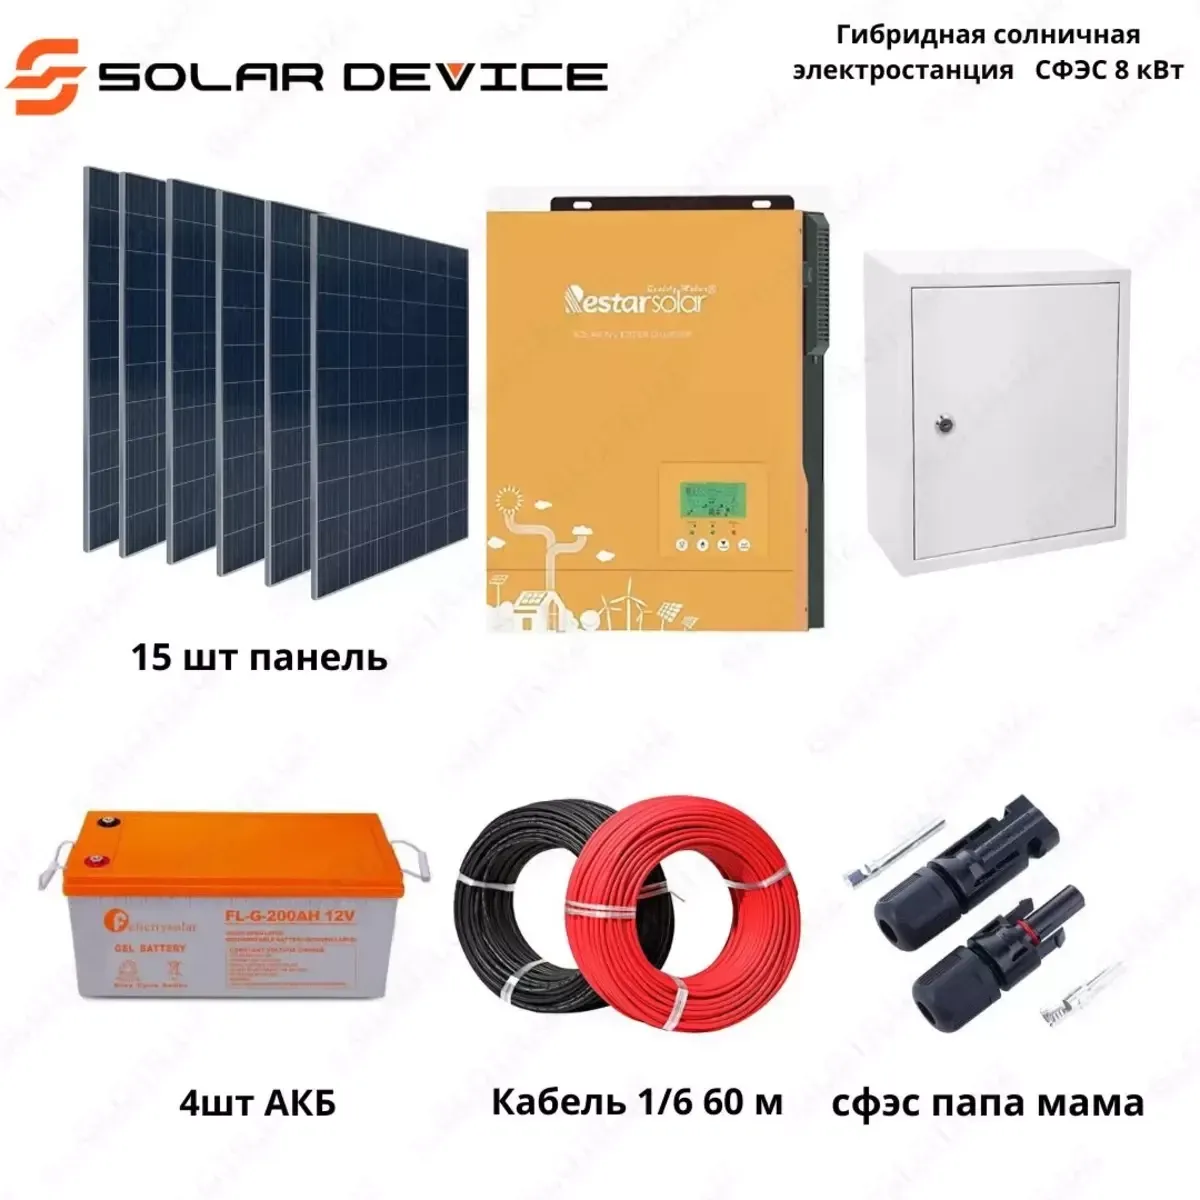 Гибридная солнечная электростанция "SOLAR" СФЭС (8 кВт)#1